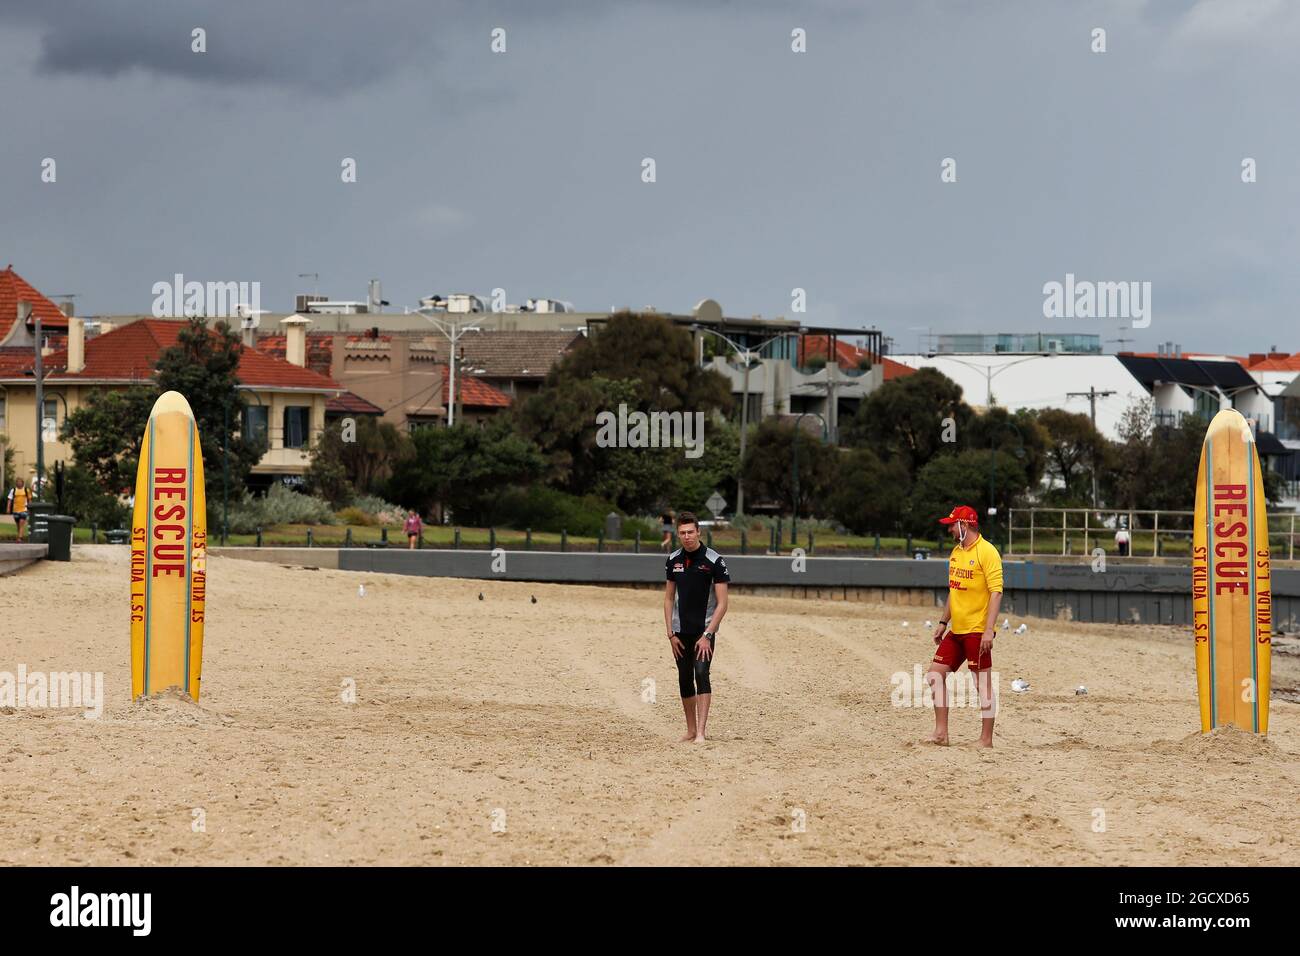 Daniil Kvyat (RUS) Scuderia Toro Rosso am St Kilda Beach mit dem St Kilda Lifesaving Club. Großer Preis von Australien, Mittwoch, 22. März 2017. Albert Park, Melbourne, Australien. Stockfoto